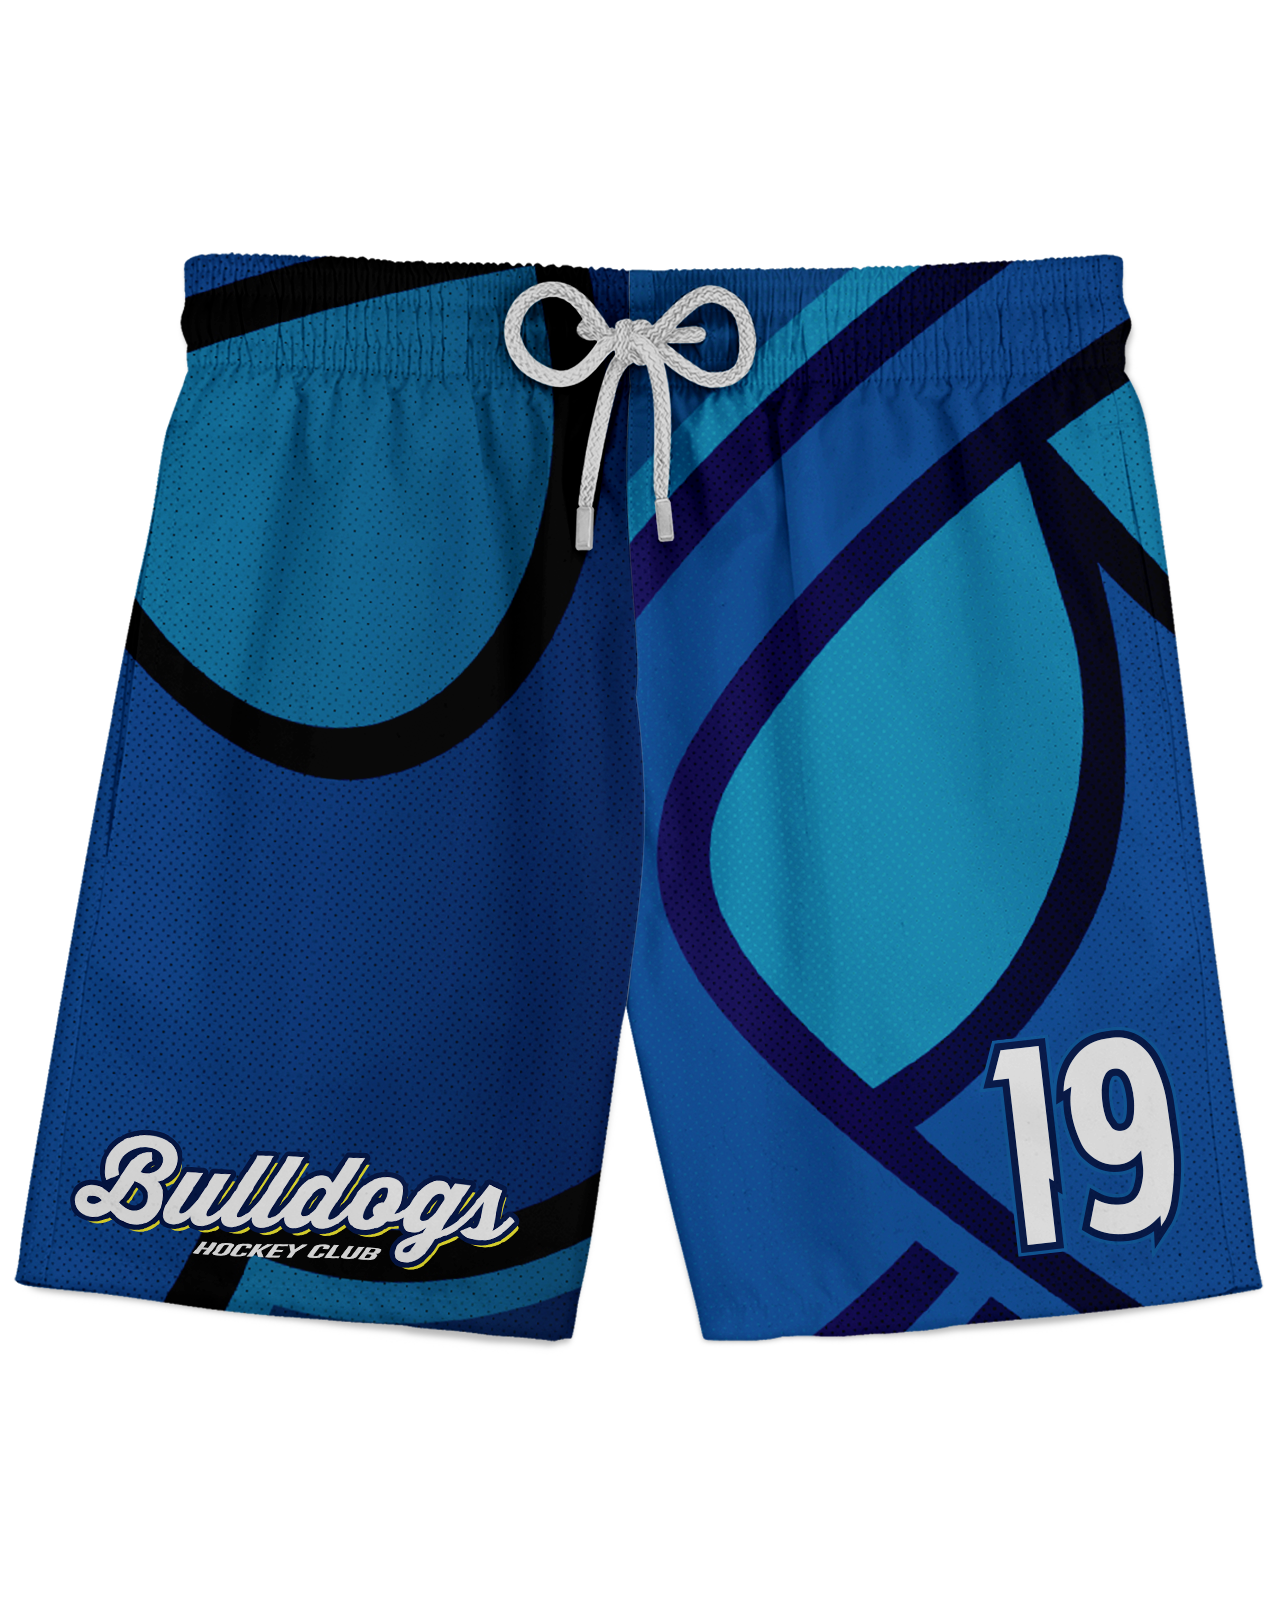 Corona Bulldogs Oversized Logo Athletic Shorts product image